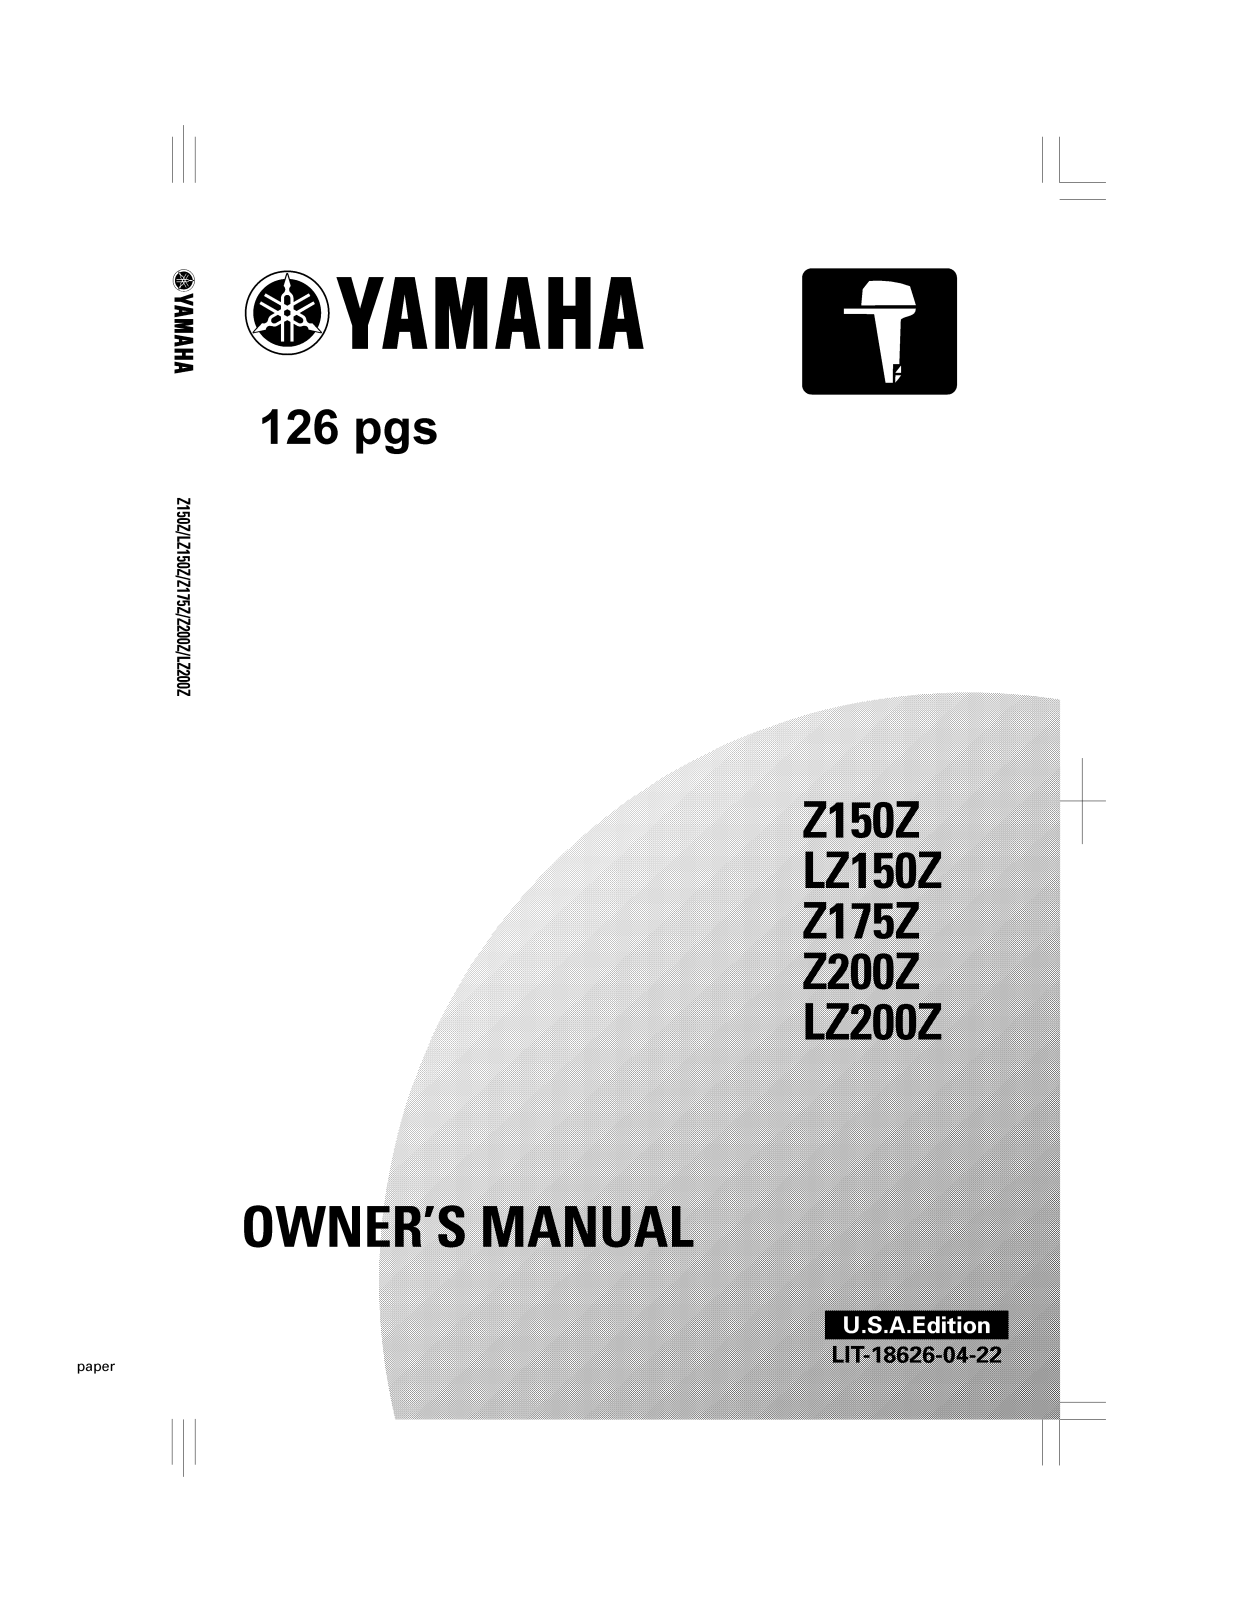 Yamaha Z150Z, LZ150Z, Z175Z, Z200Z, LZ200Z Manual